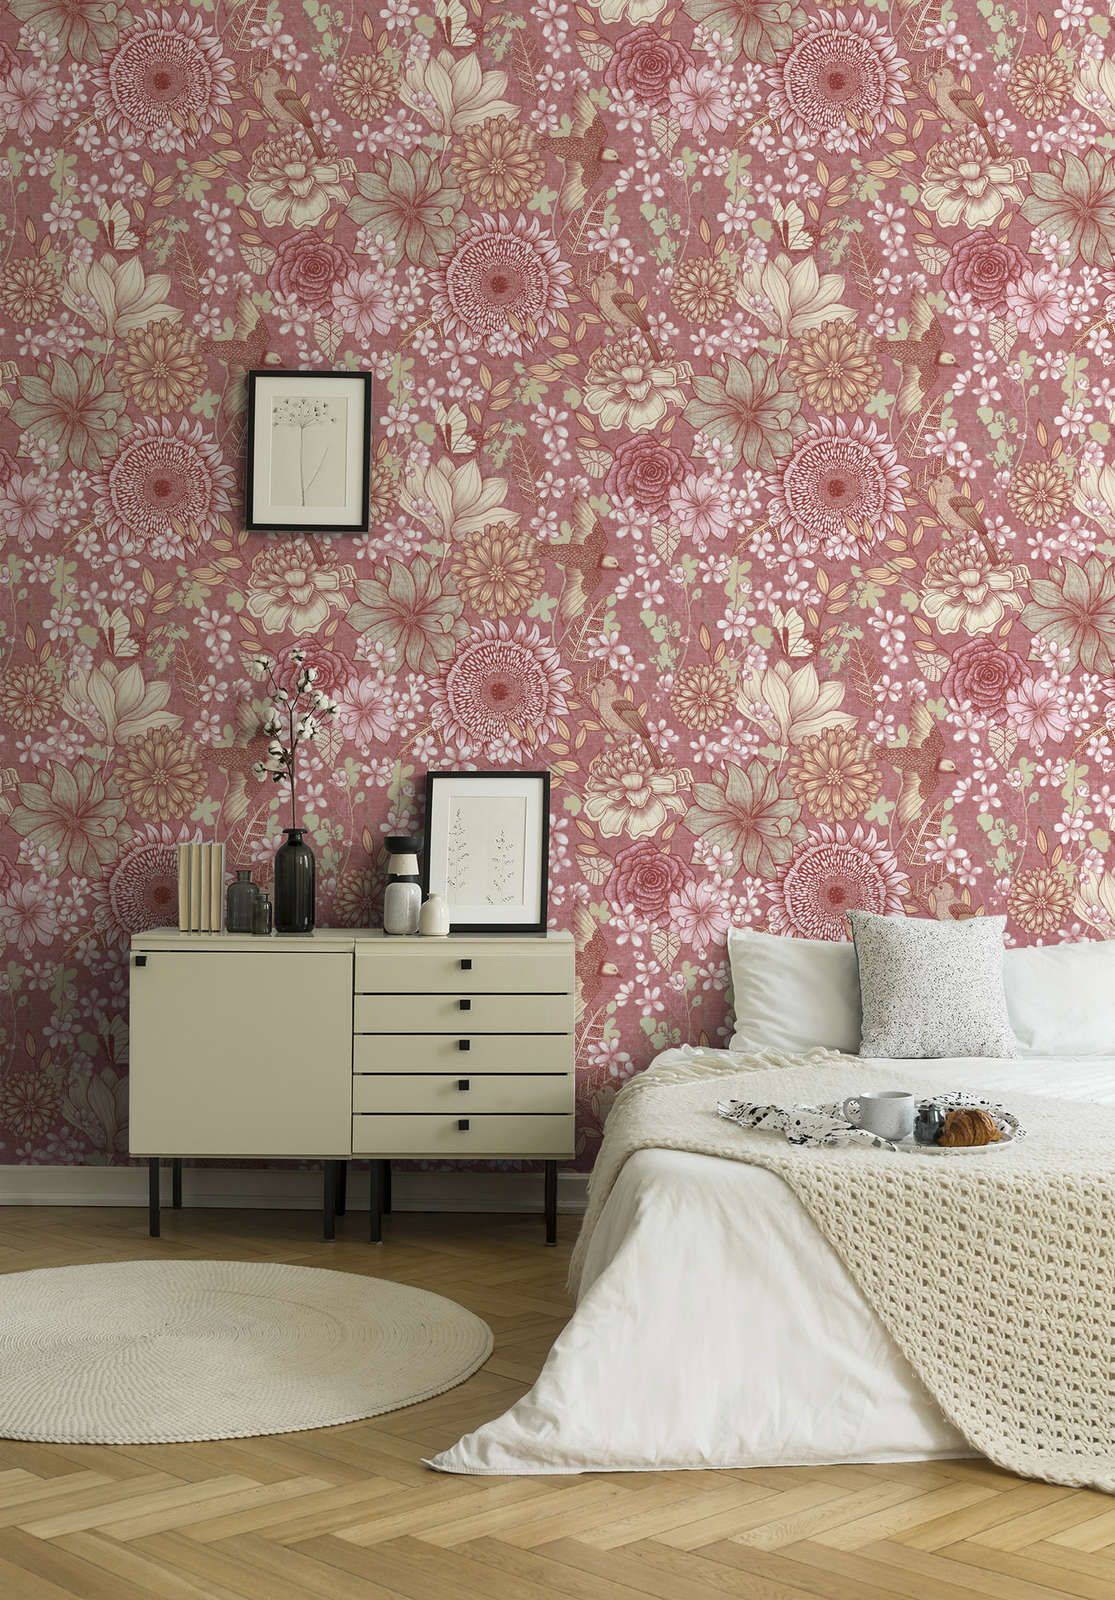             Papel pintado tejido-no tejido floral con varias flores y hojas - rosa, blanco, crema
        